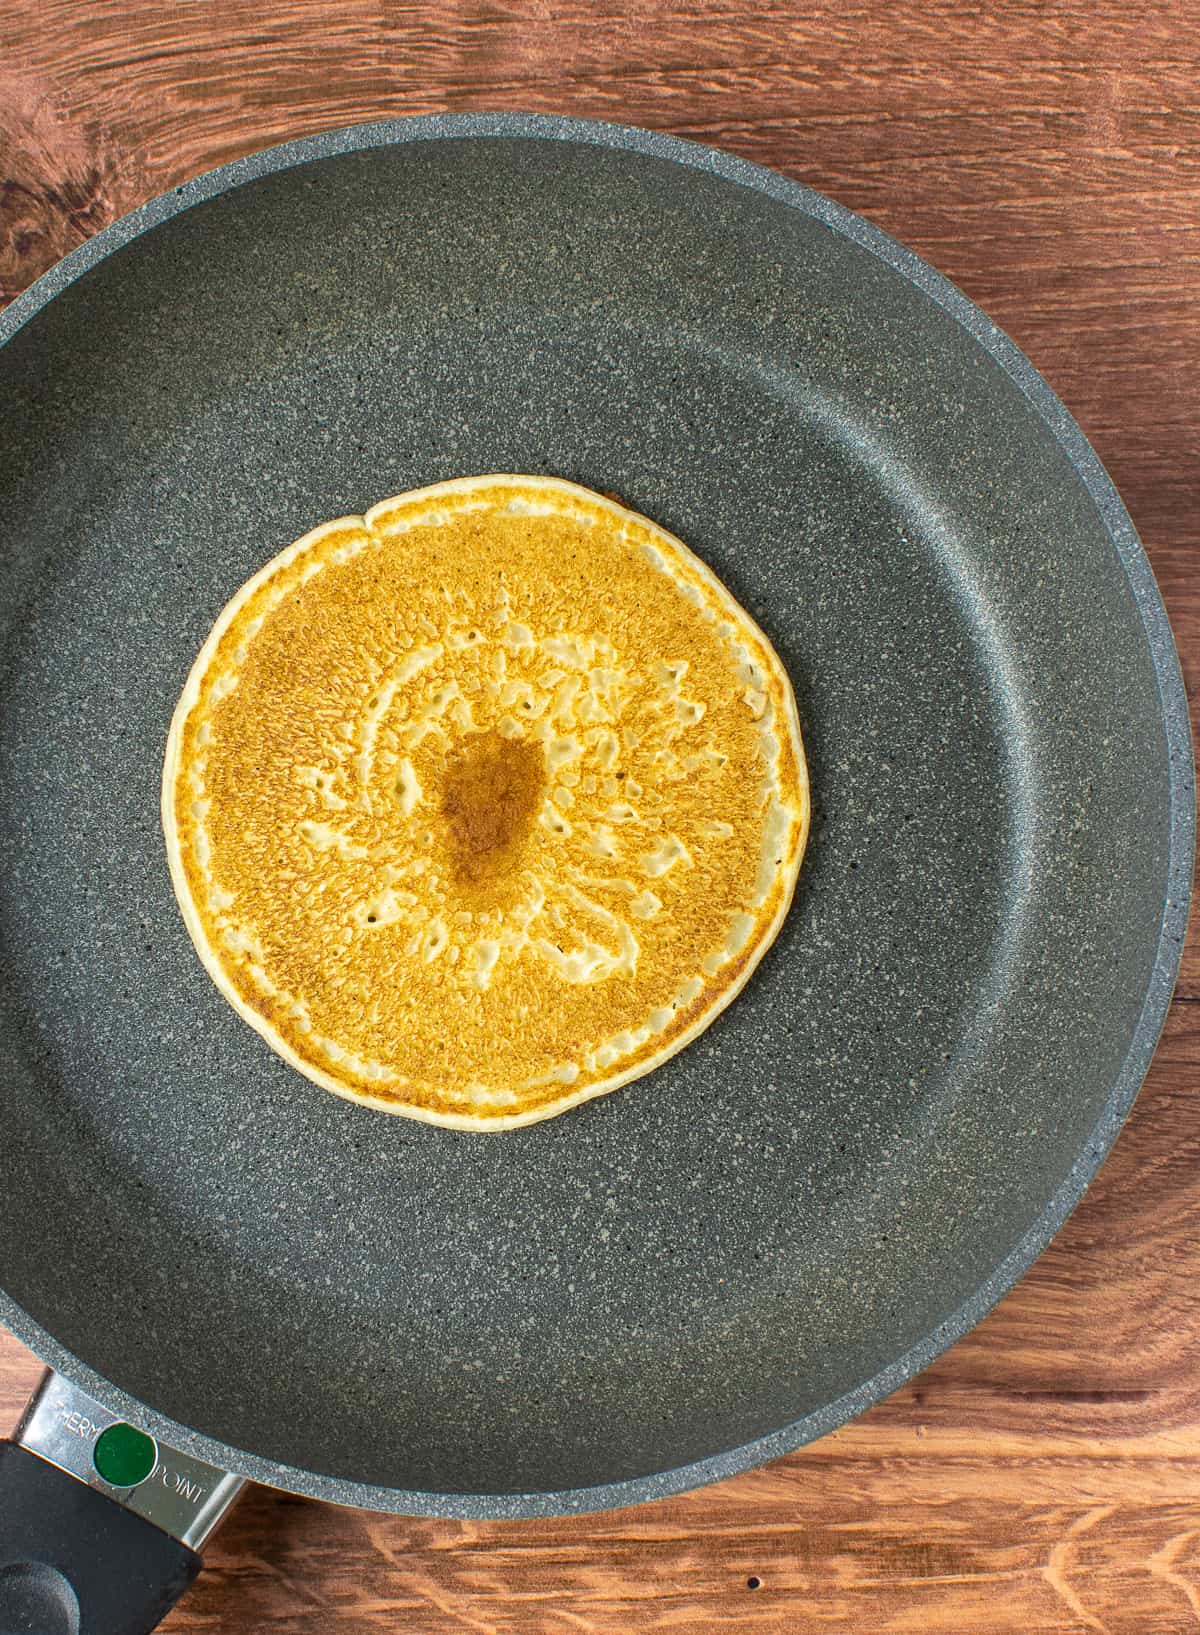 Pancake in a frying pan